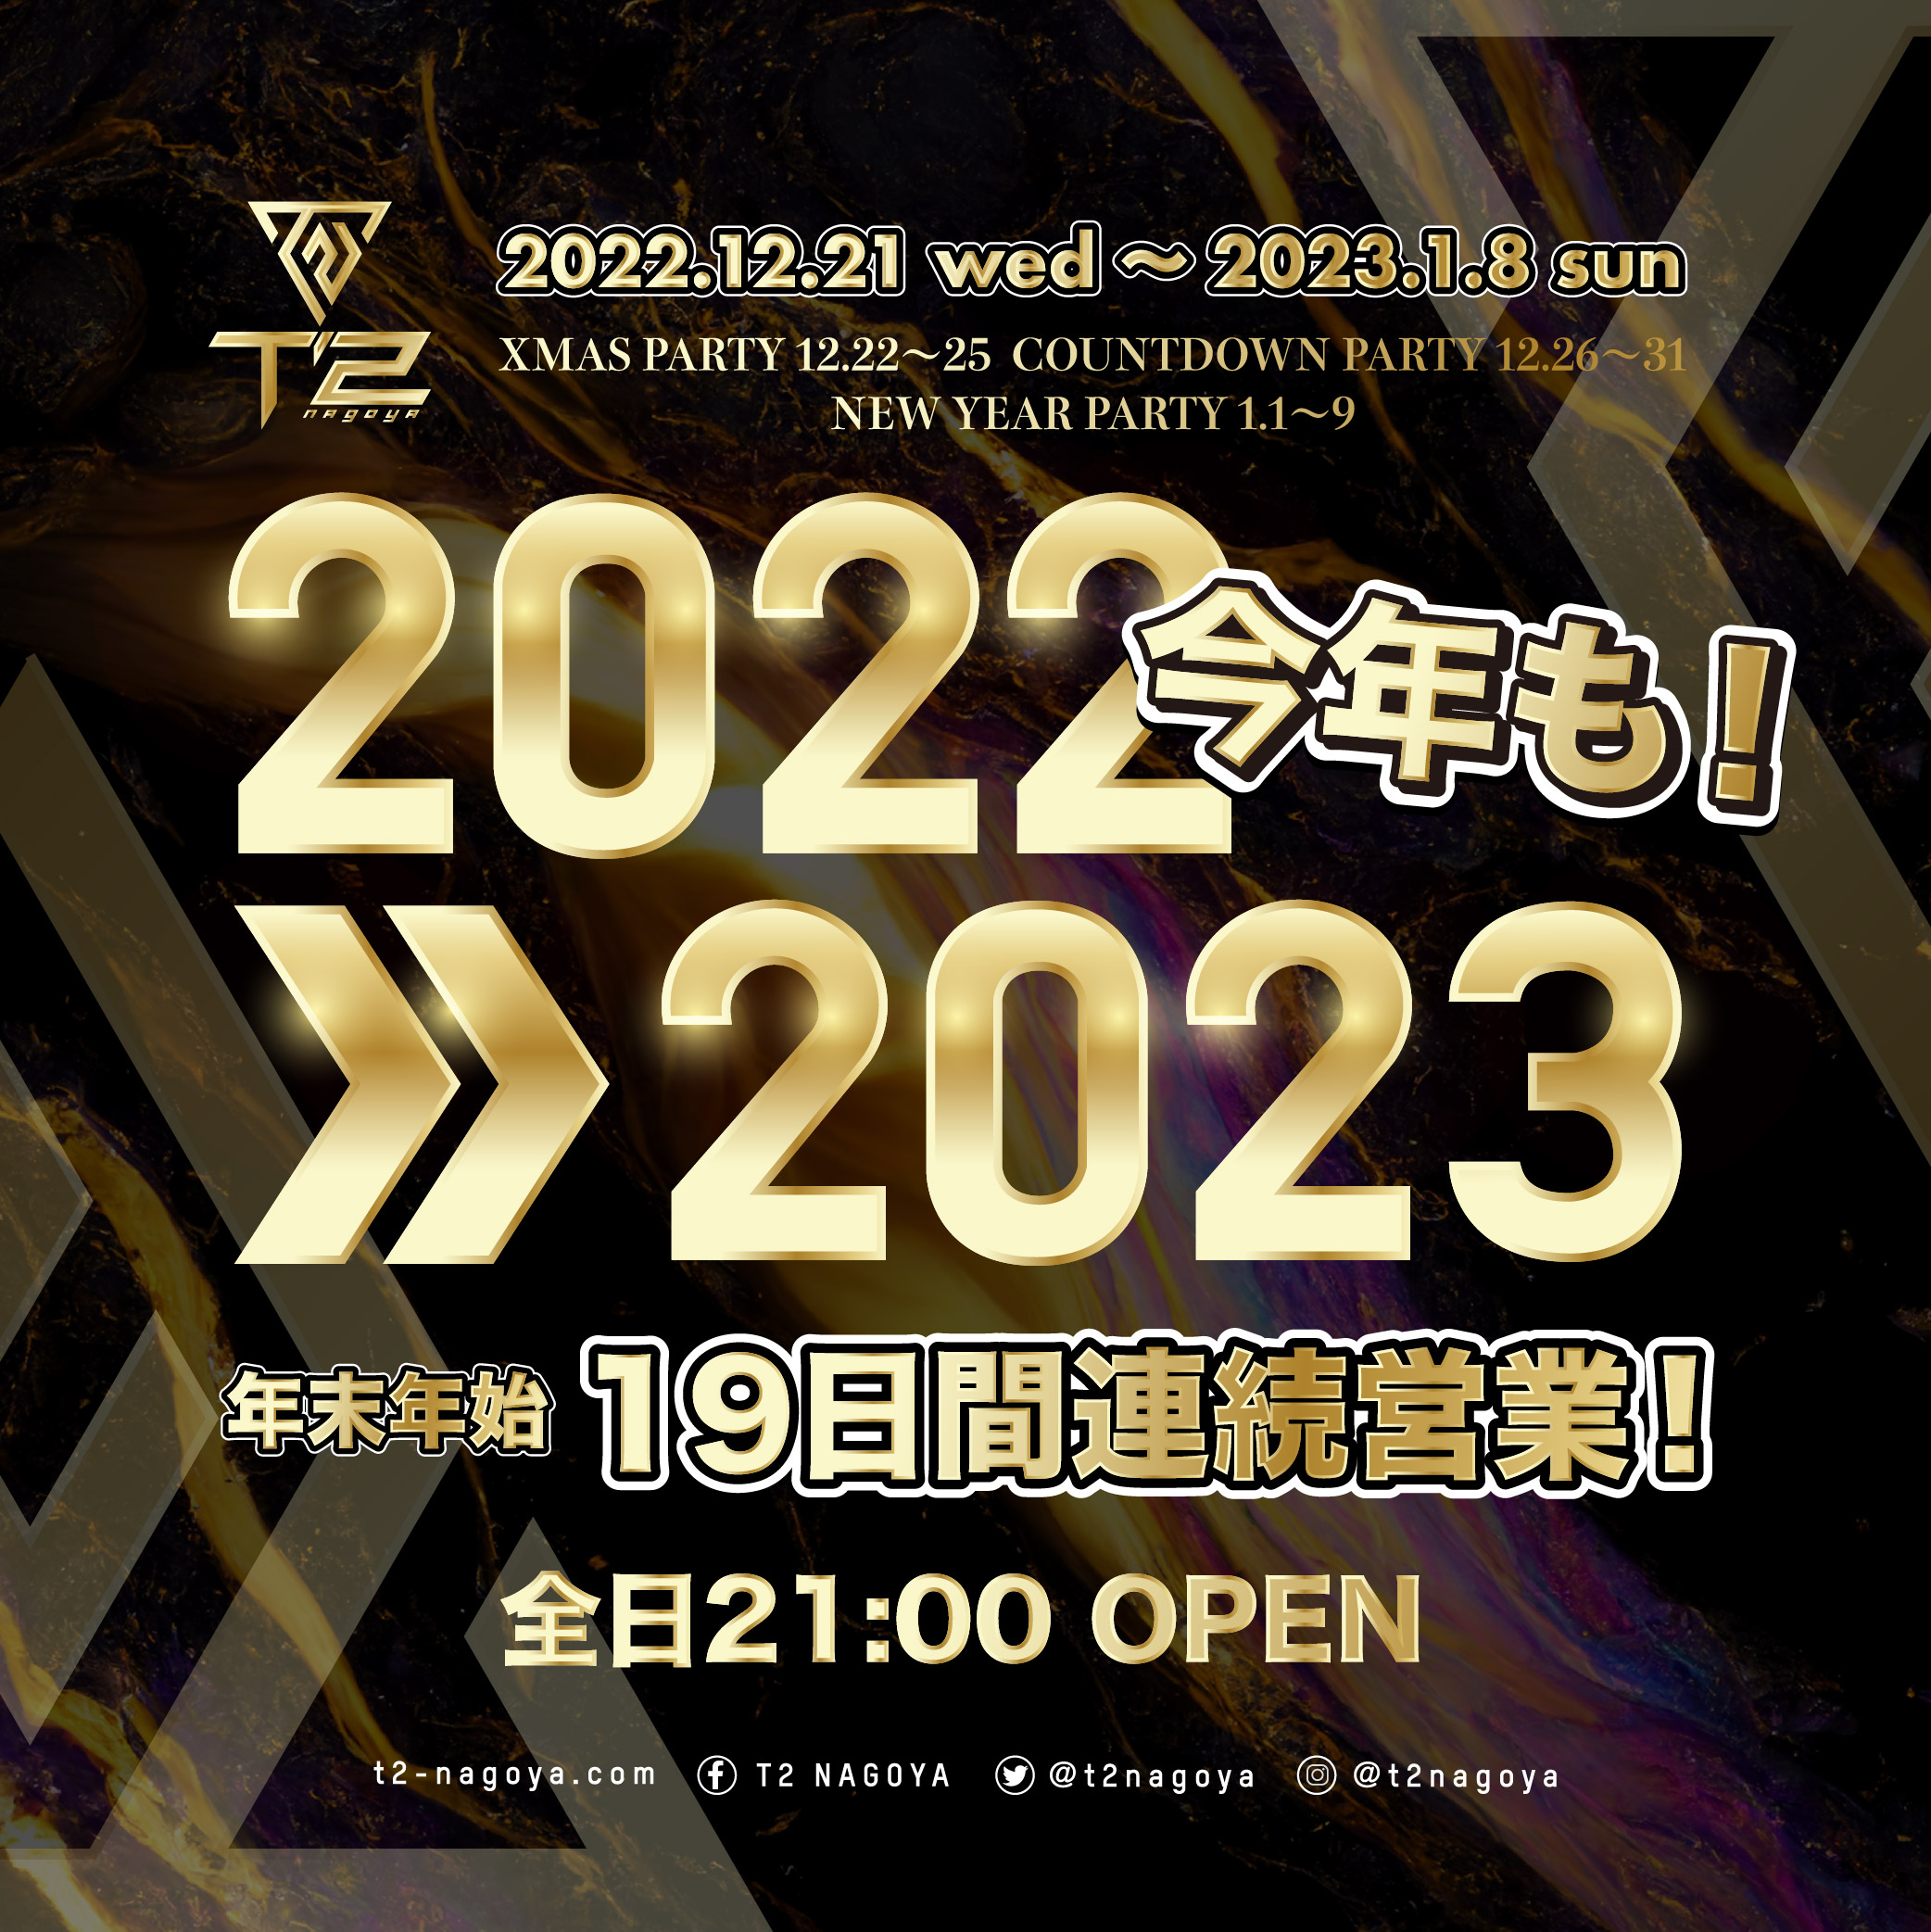 2022>>2023 19日間連続営業！！2022.12.21 wed 〜 2023.1.8 sun